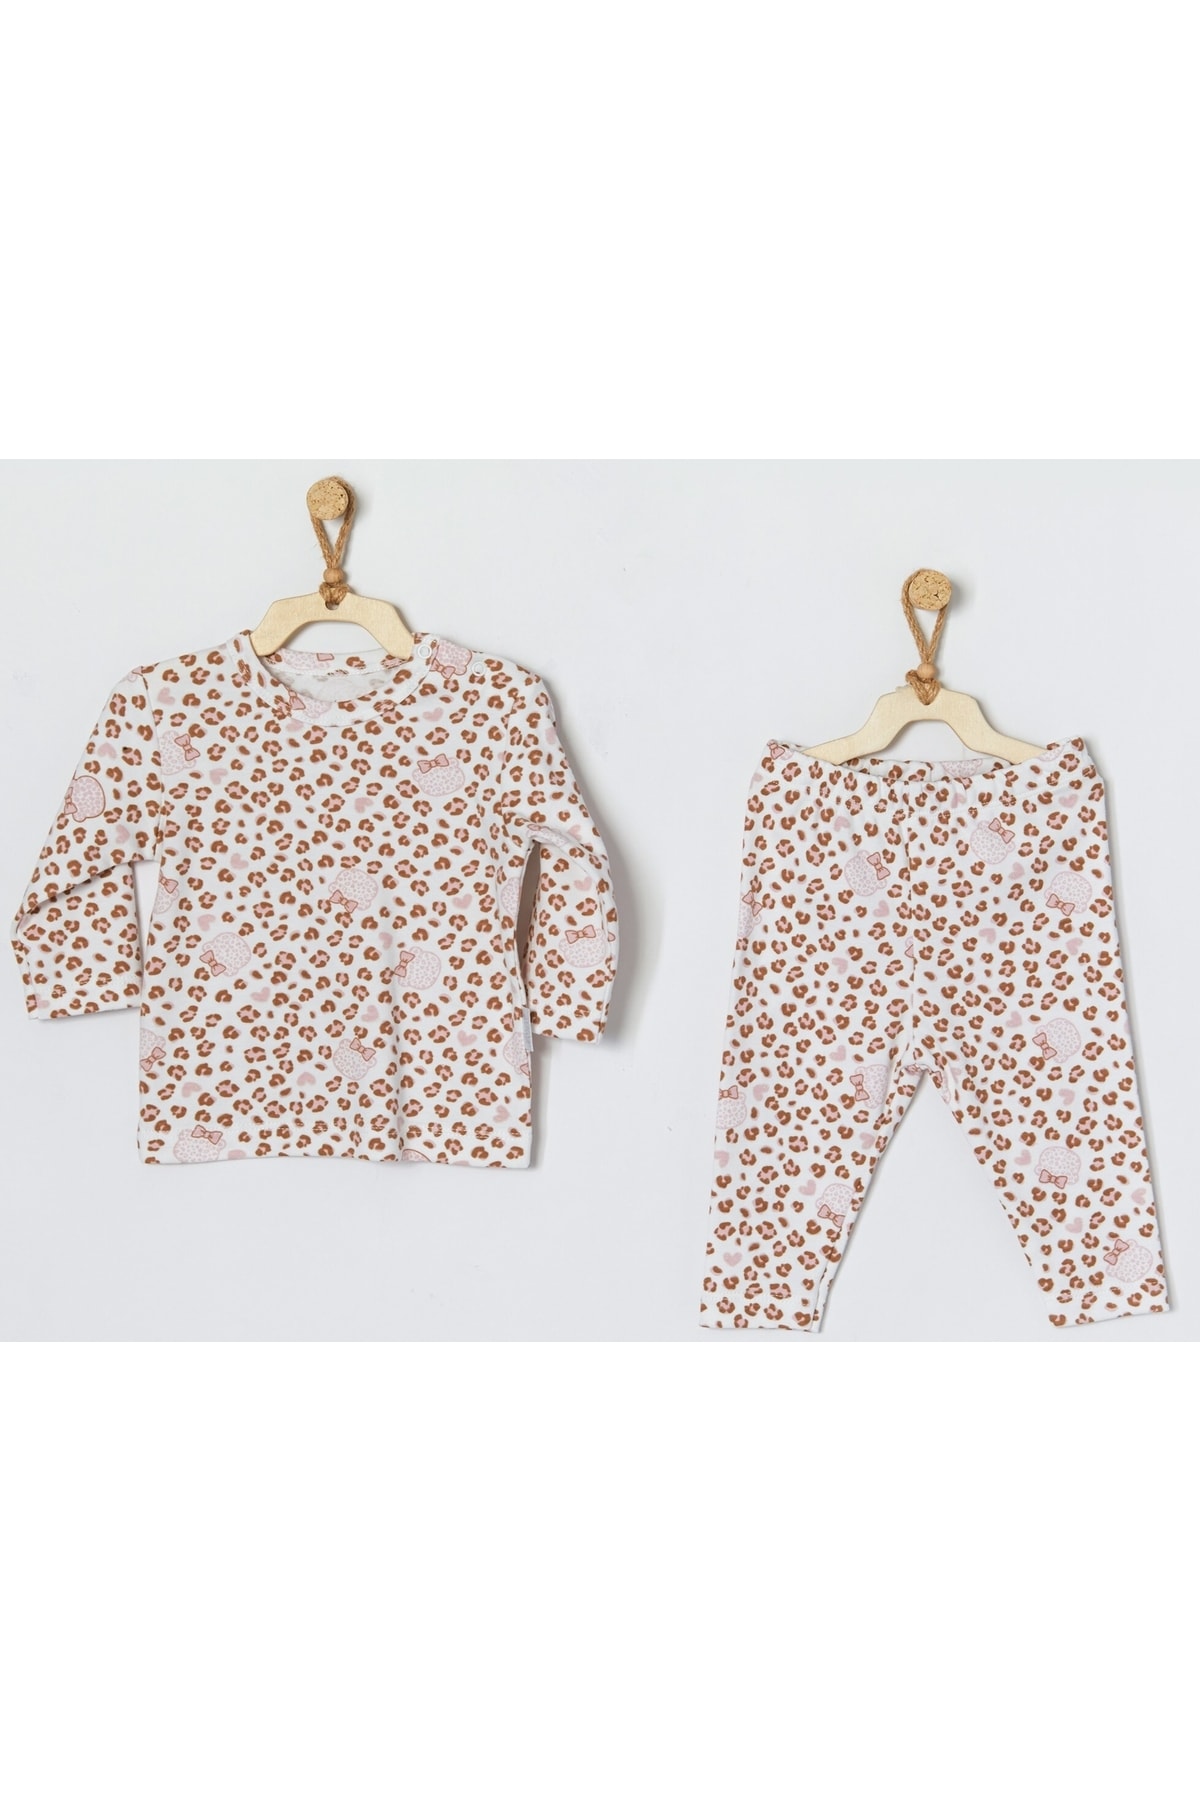 andywawa Bebek Pijama Takım Pajamas Set Cute Leopard